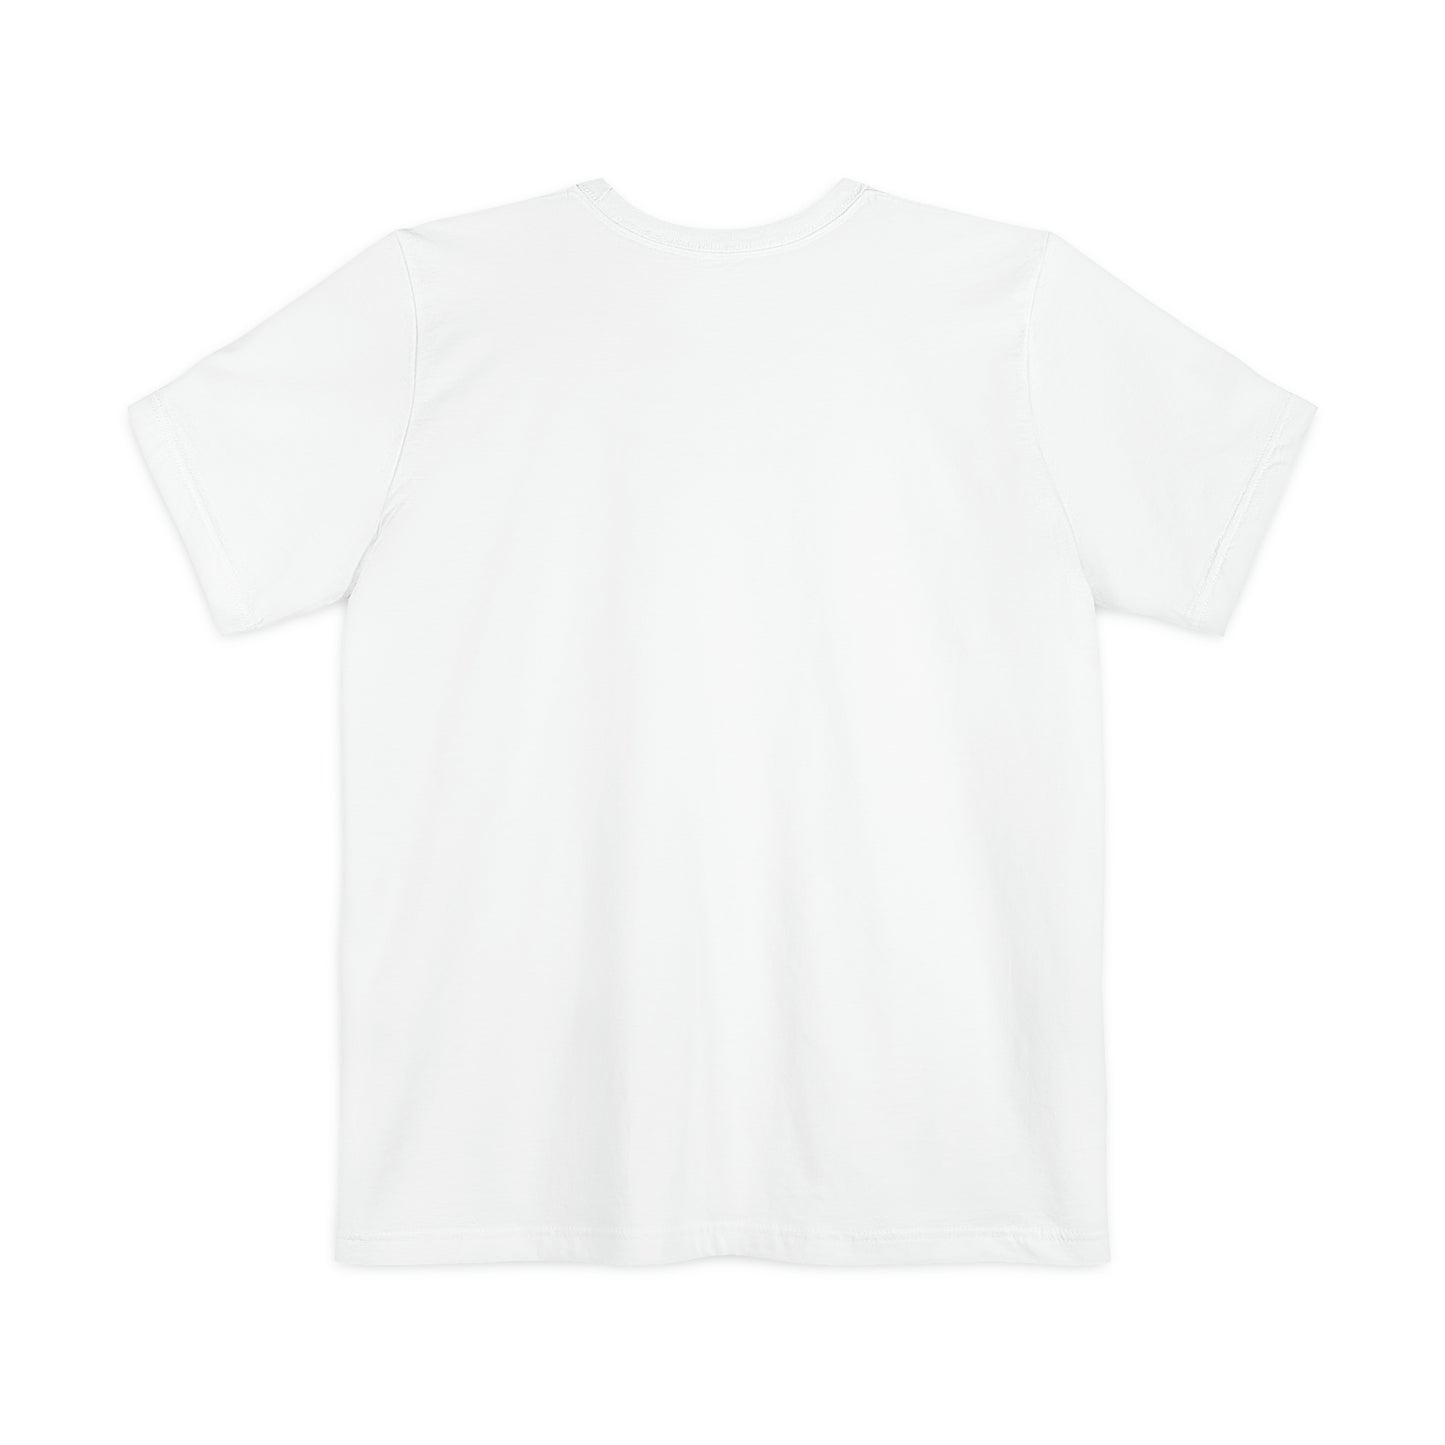 Hola Unisex Pocket T-shirt